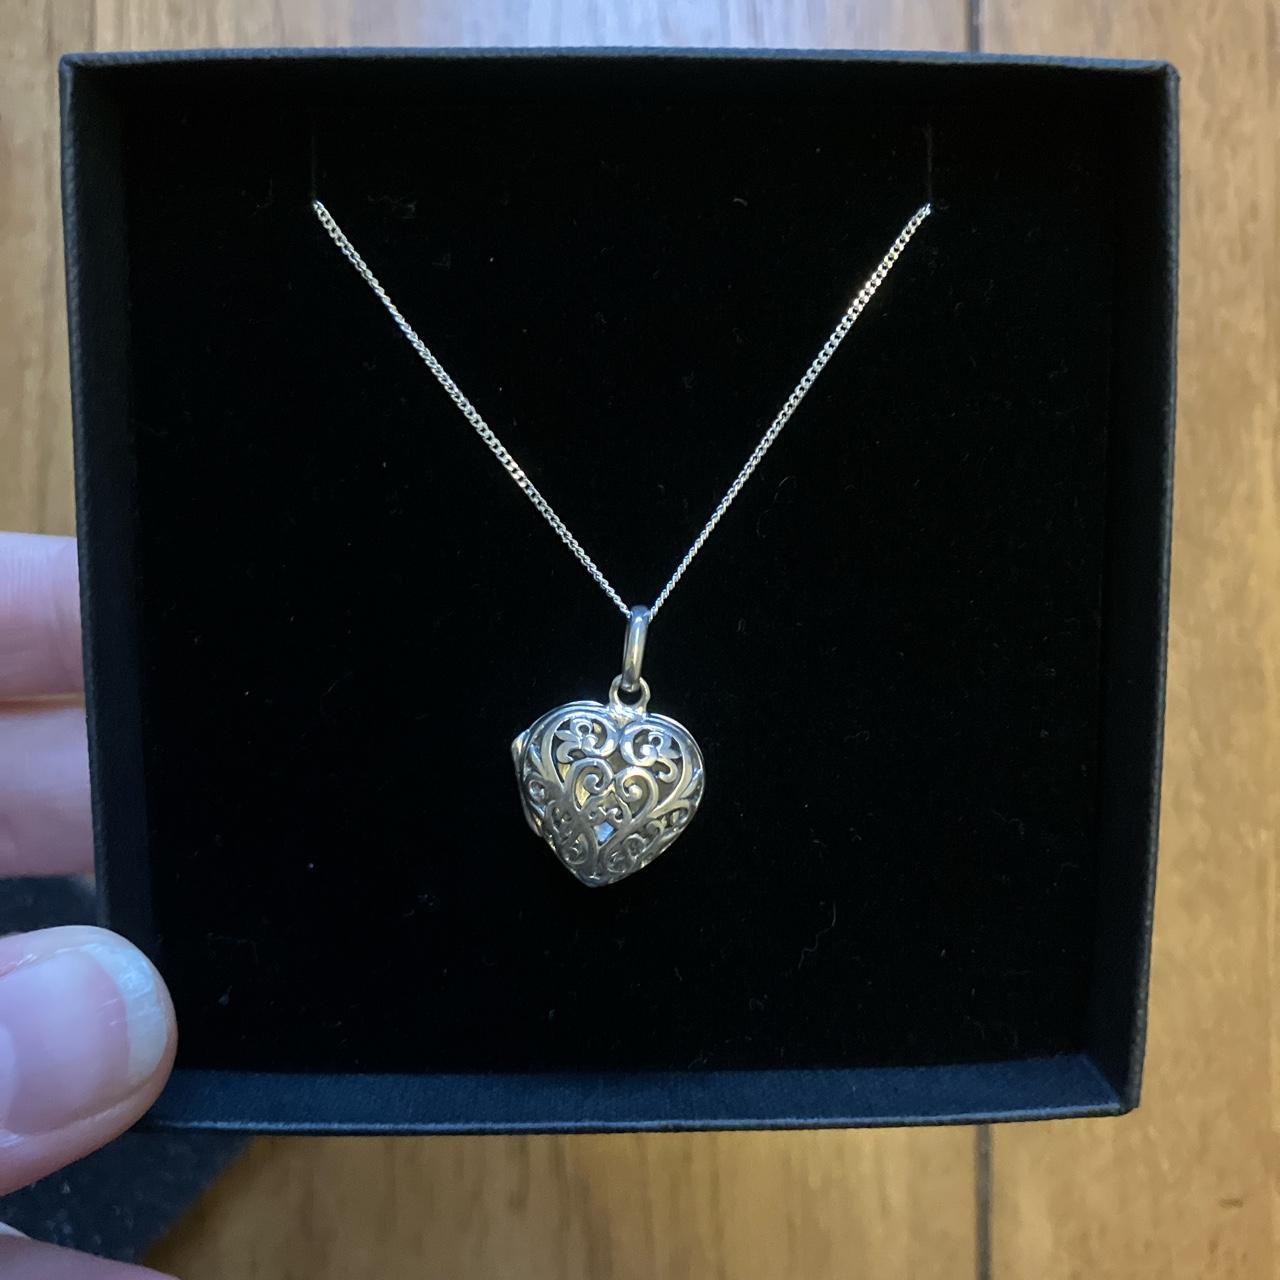 Shop H Samuel Women's Heart Necklaces up to 70% Off | DealDoodle